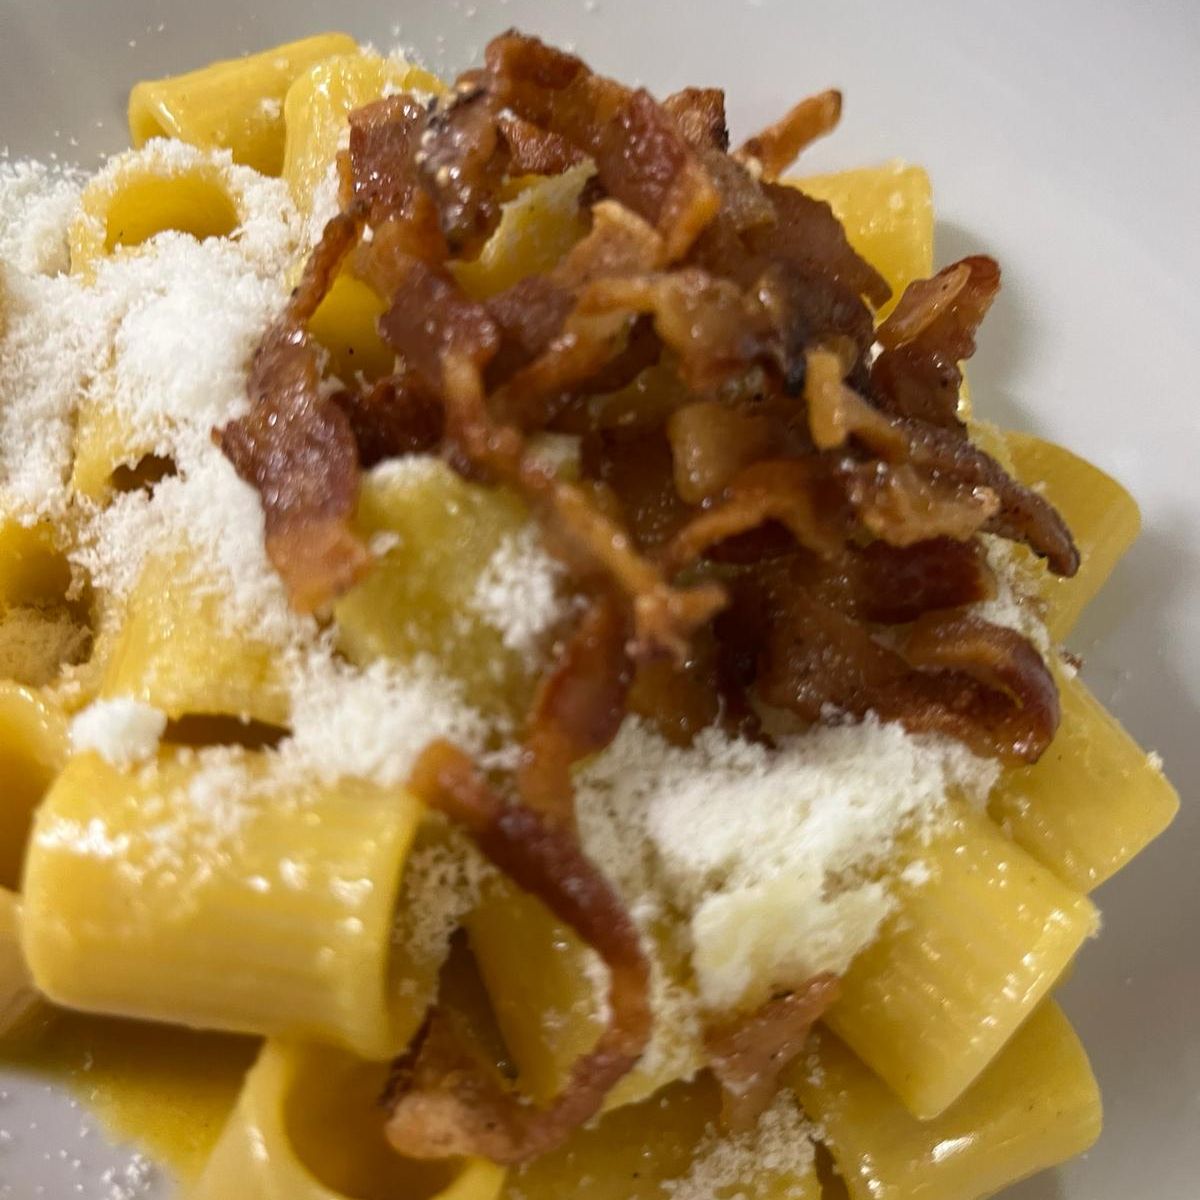 Gastronomia, il 6 aprile si festeggia la pasta alla carbonara con i grandi chef. A Calamosca ci pensa Michele Ferrara